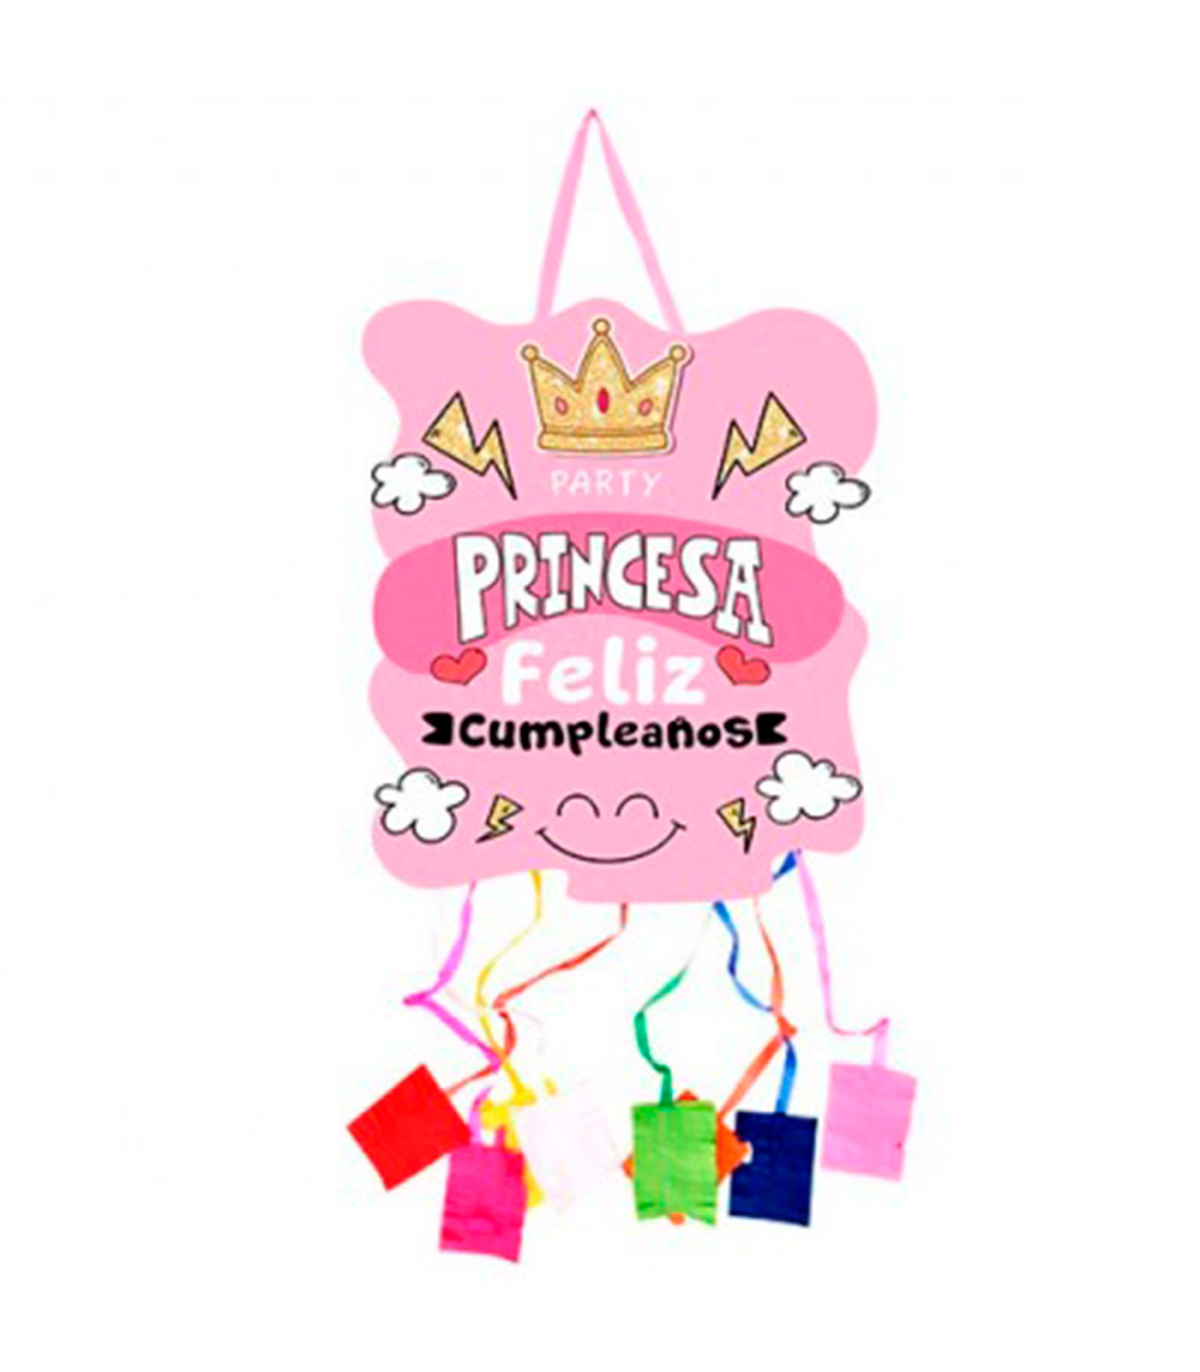 Tradineur - Piñata de princesa, feliz cumpleaños, cartón, para rellenar con  golosinas, chuches, niñas, decoración infantil, fies